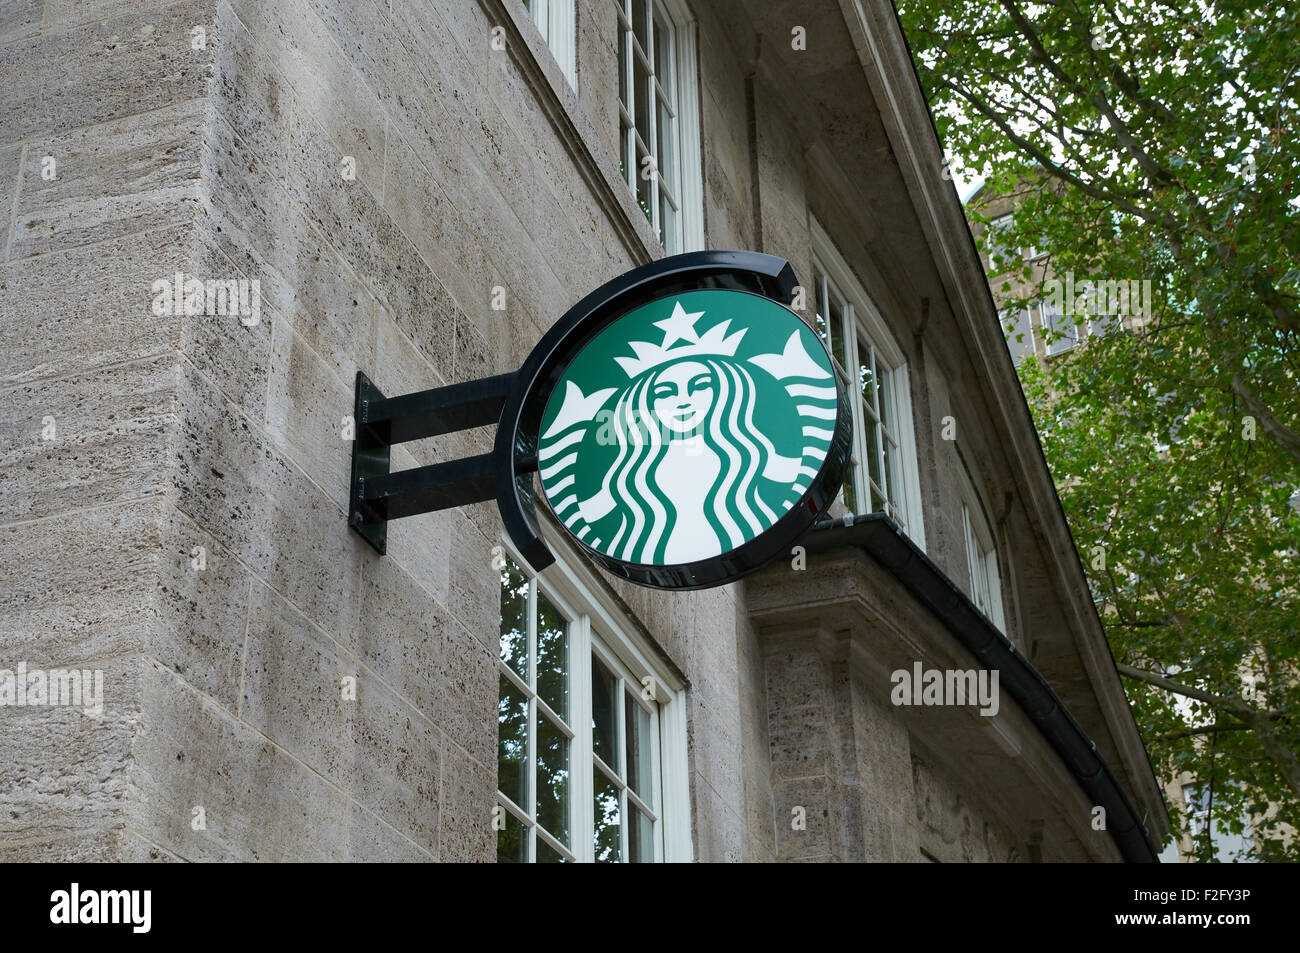 HAMBURG, Deutschland - 14. August 2015: Starbucks Coffee Logo Lichtkasten, Starbucks ist das größte Kaffeehaus-Unternehmen der Welt Stockfoto